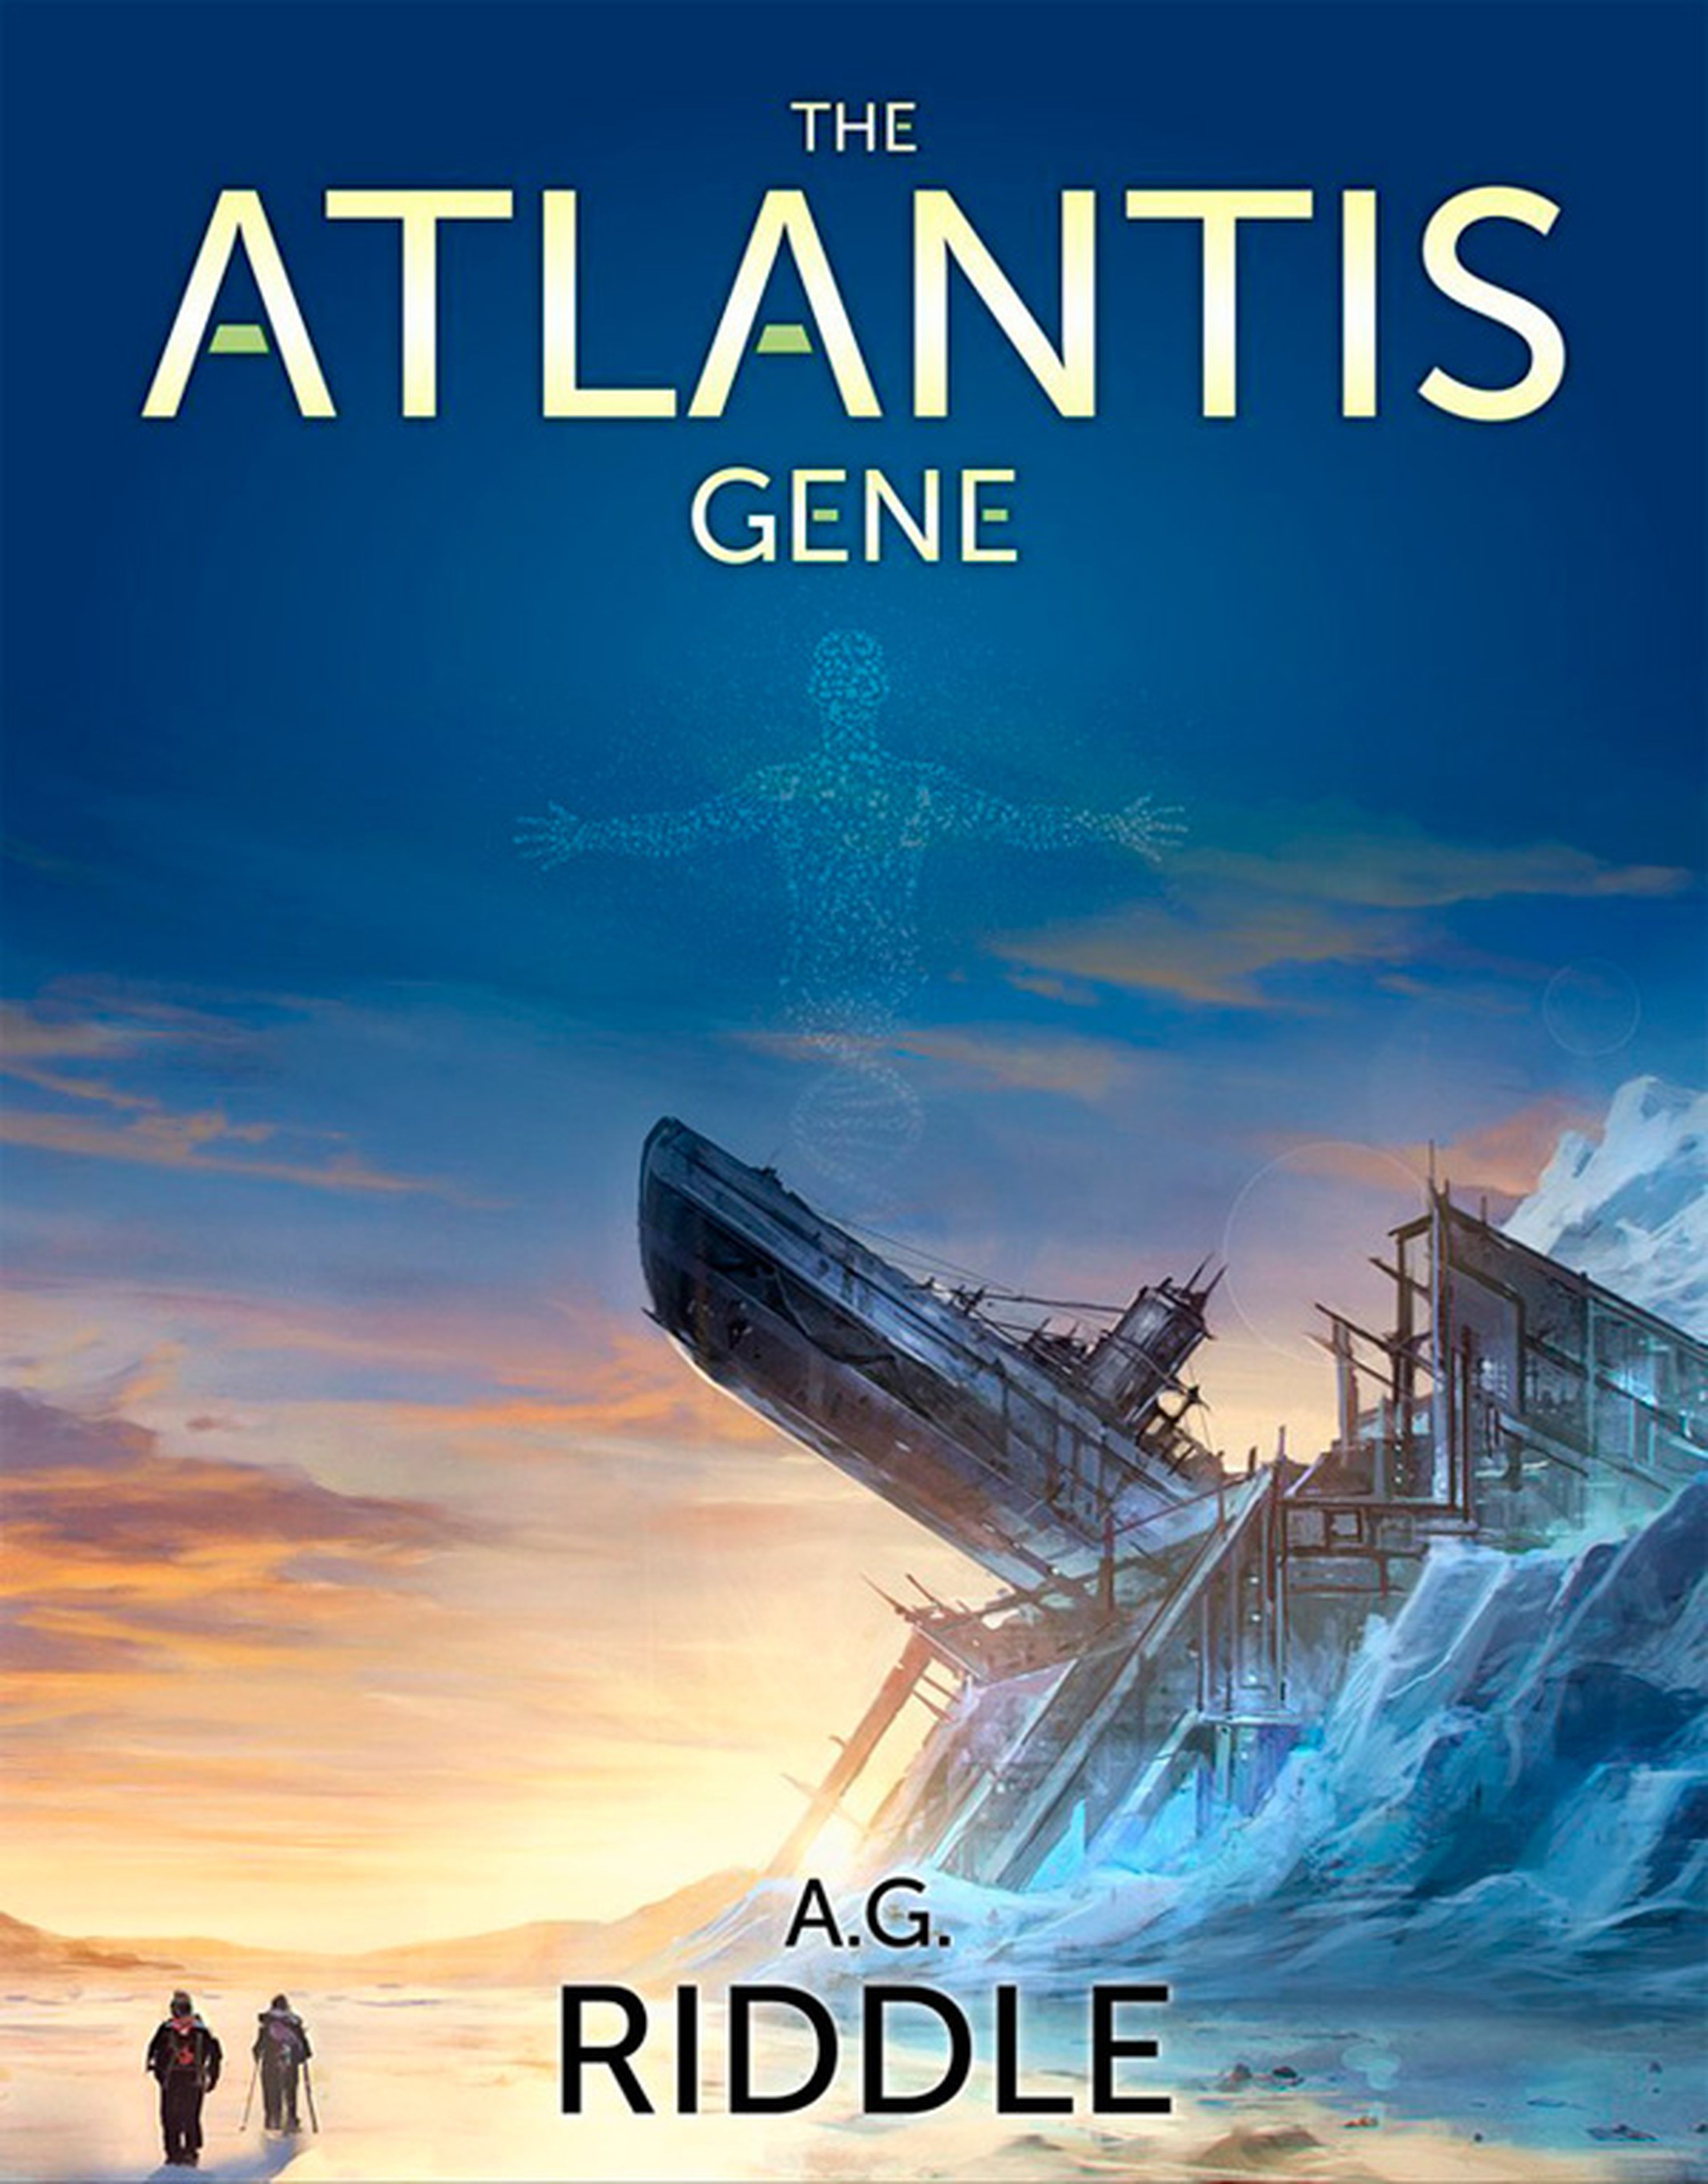 La saga de ciencia ficción Atlantis tendrá su adaptación cinematográfica